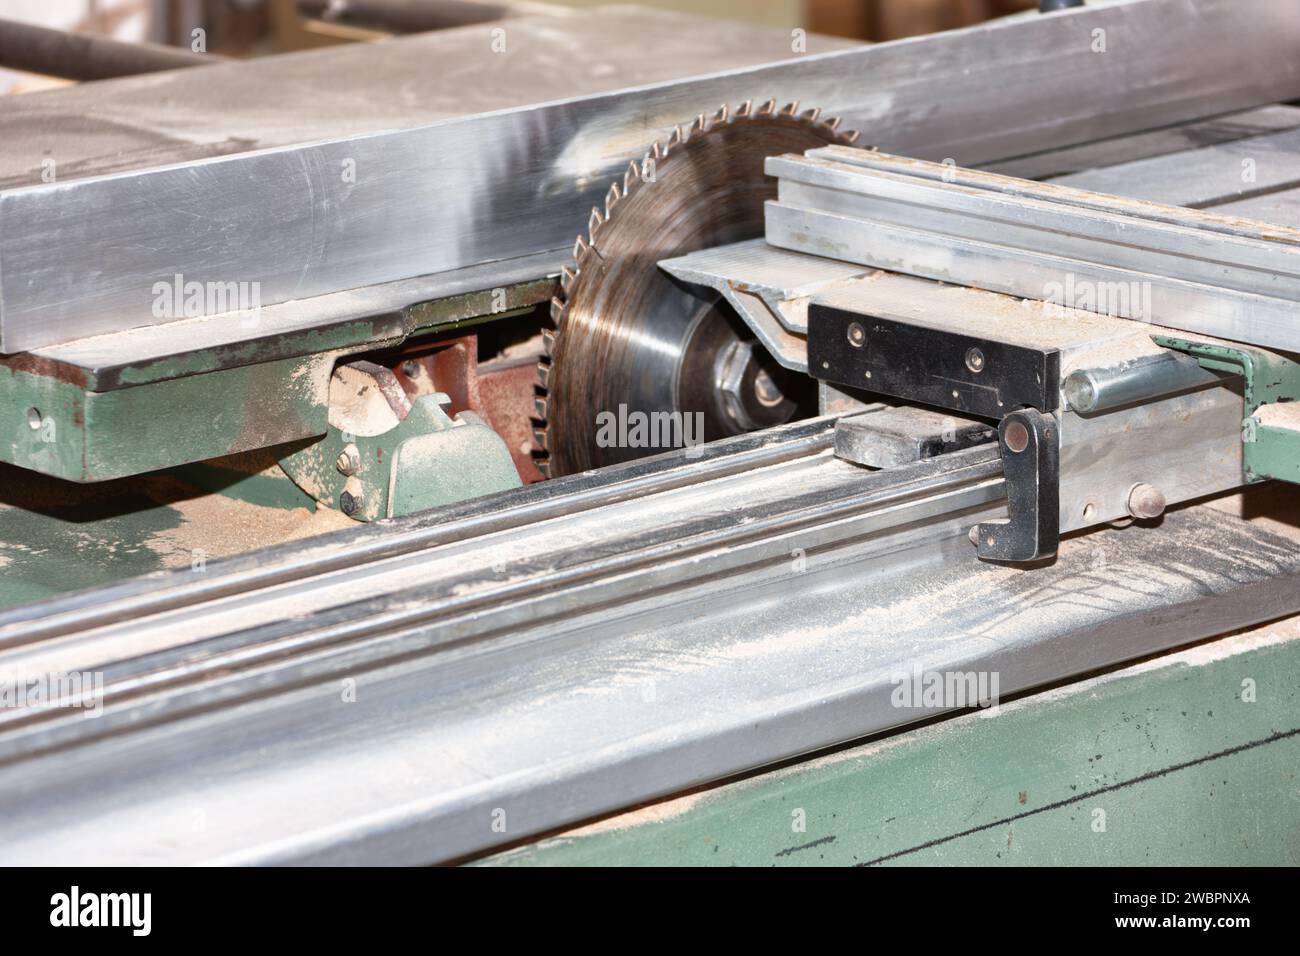 Sägeblatt Holzbearbeitungsmaschine in der Werkstatt, die Holz schneidet Stockfoto